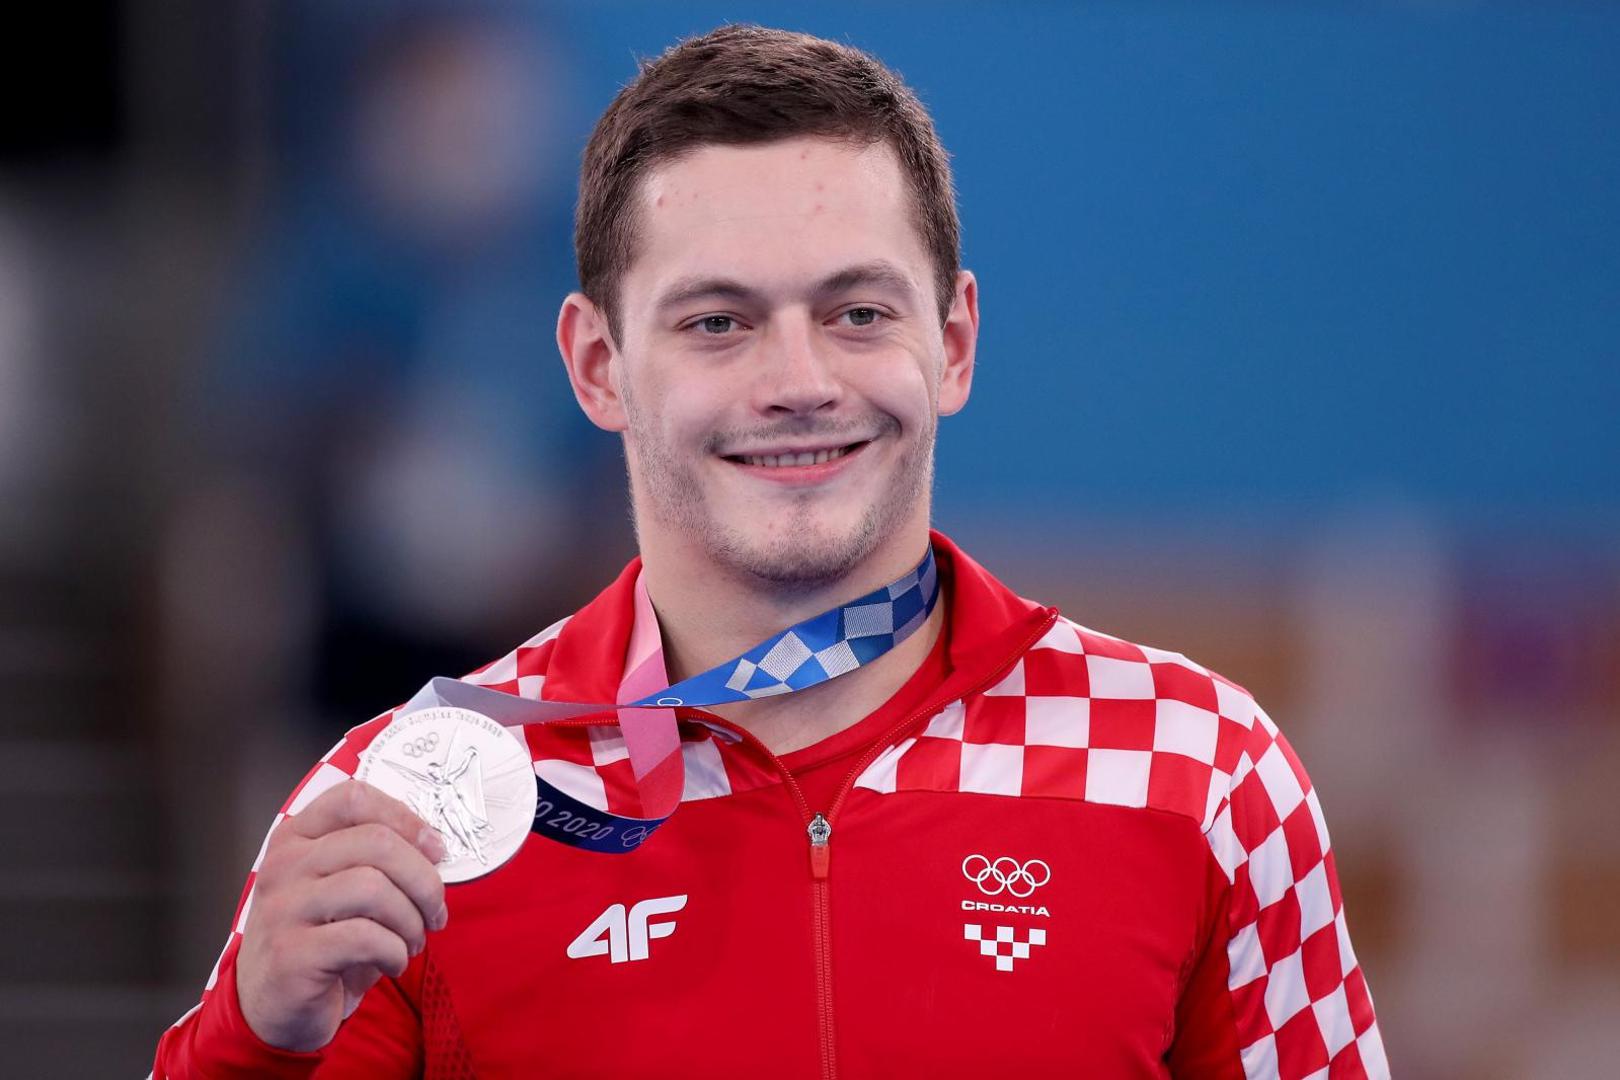 Hrvatski gimnastičar Tin Srbić u finalu preče na Olimpijskim igrama.